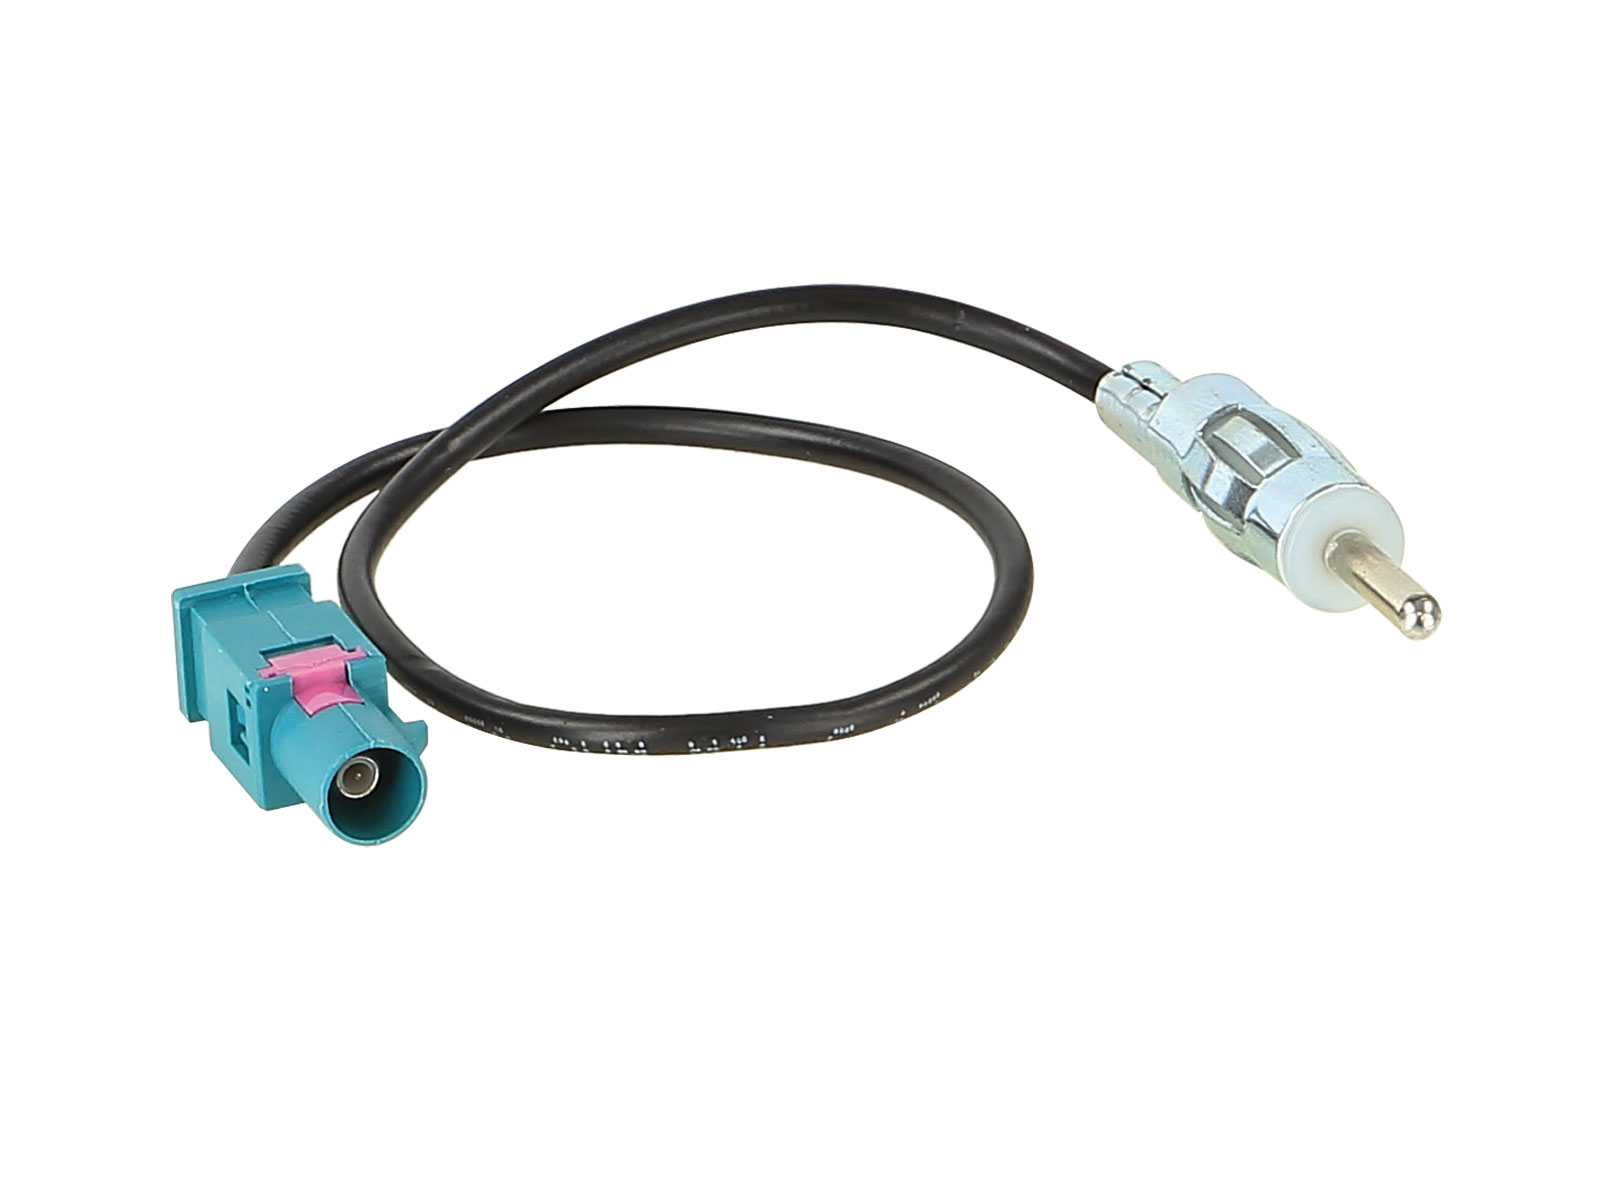 ACV Antennenadapter kompatibel mit VW ab Bj. 2002 adaptiert von Fakra (m) auf DIN (m)